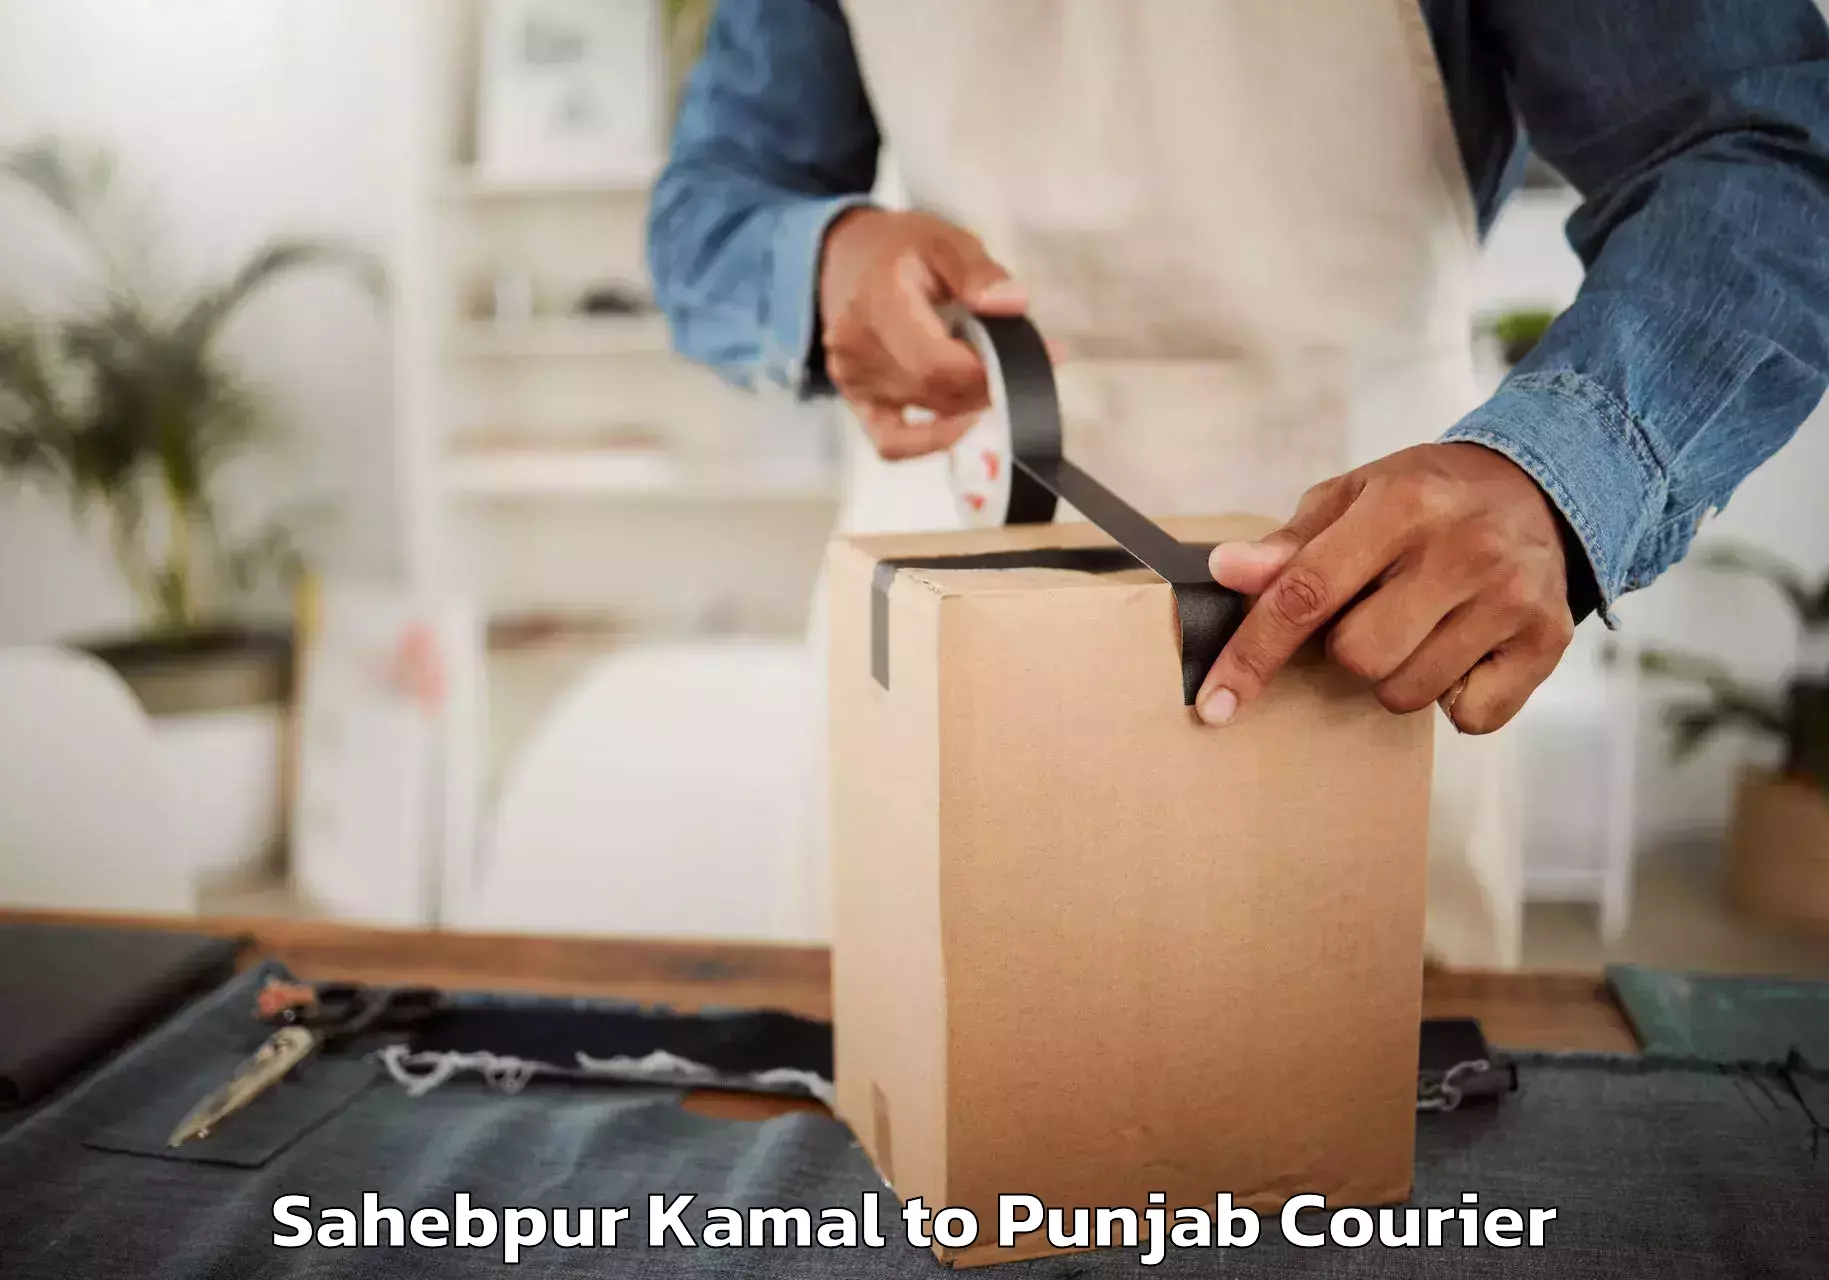 Furniture relocation experts Sahebpur Kamal to Punjab